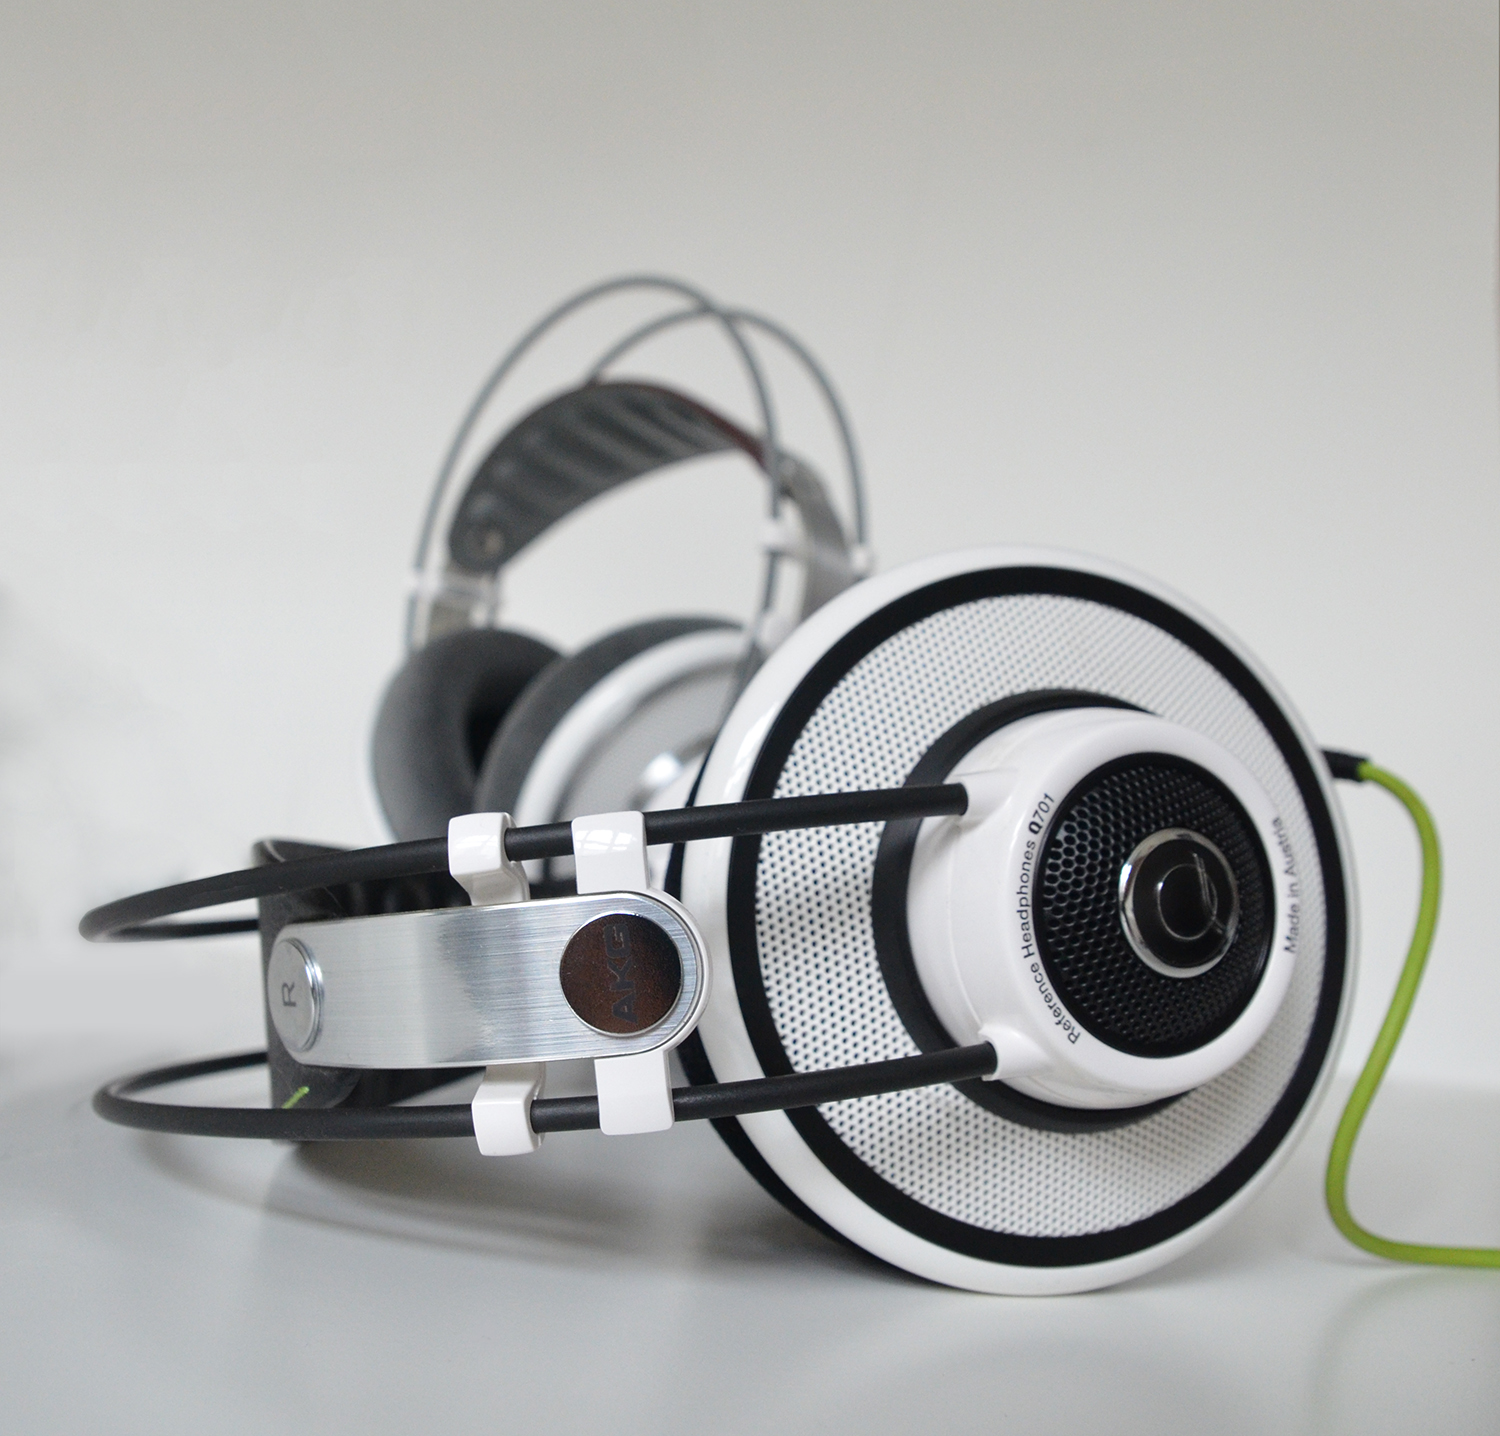 オーディオ機器 ヘッドフォン THE BIG AKG K701 AND Q701 REVIEW | The Headphoneer